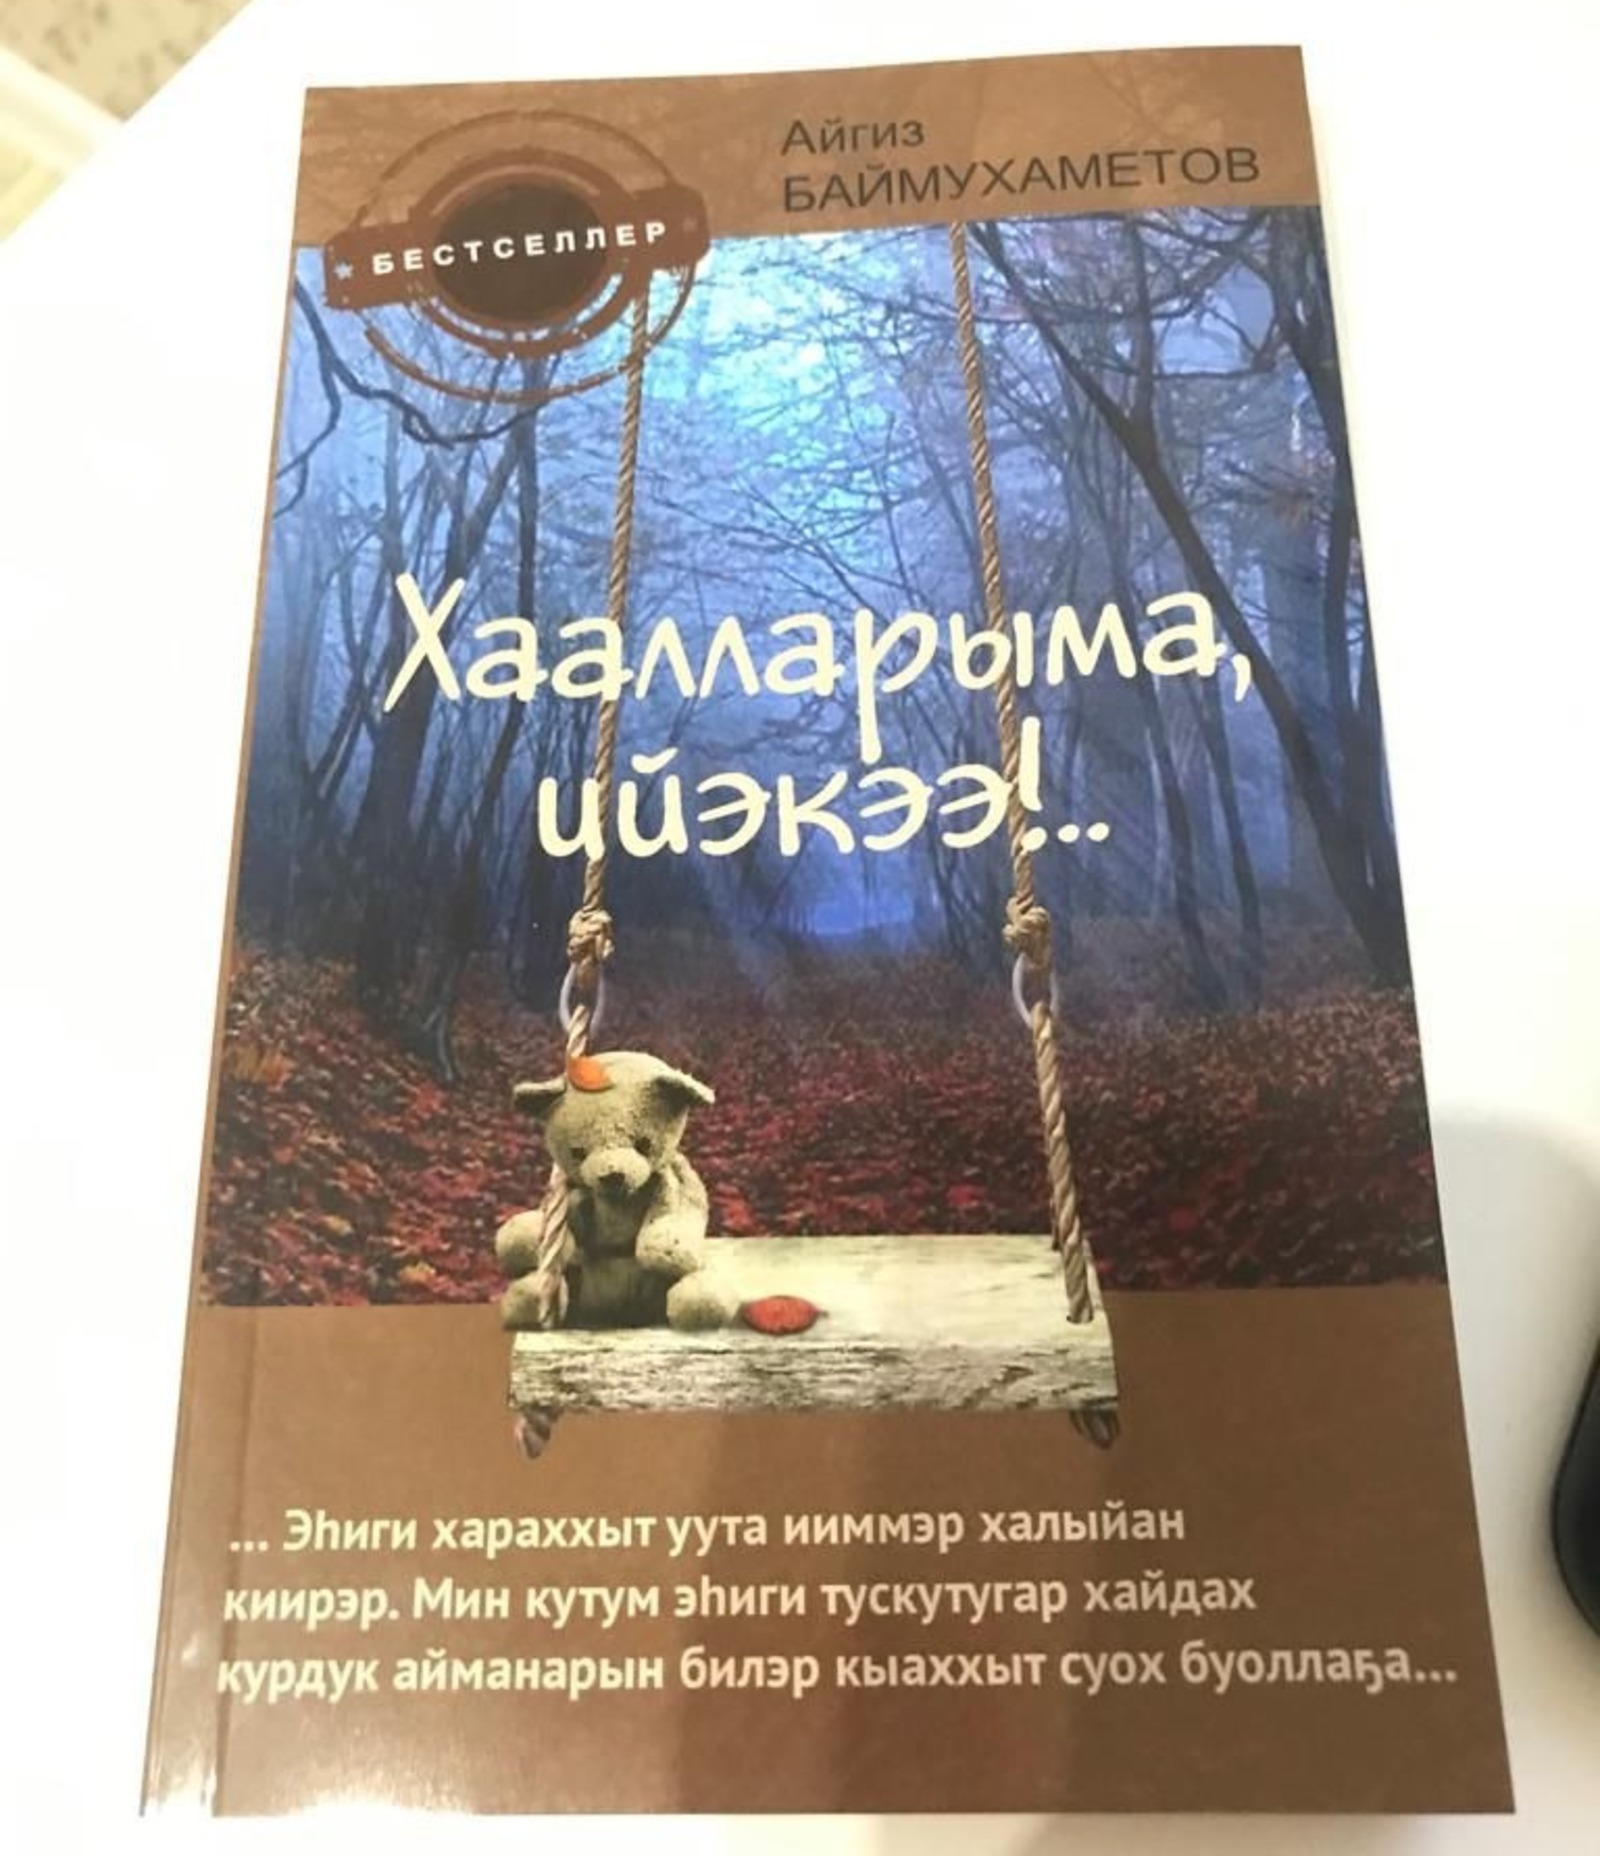 В Якутии издана книга «Не оставляй, мама!» башкирского писателя Айгиза Баймухаметова